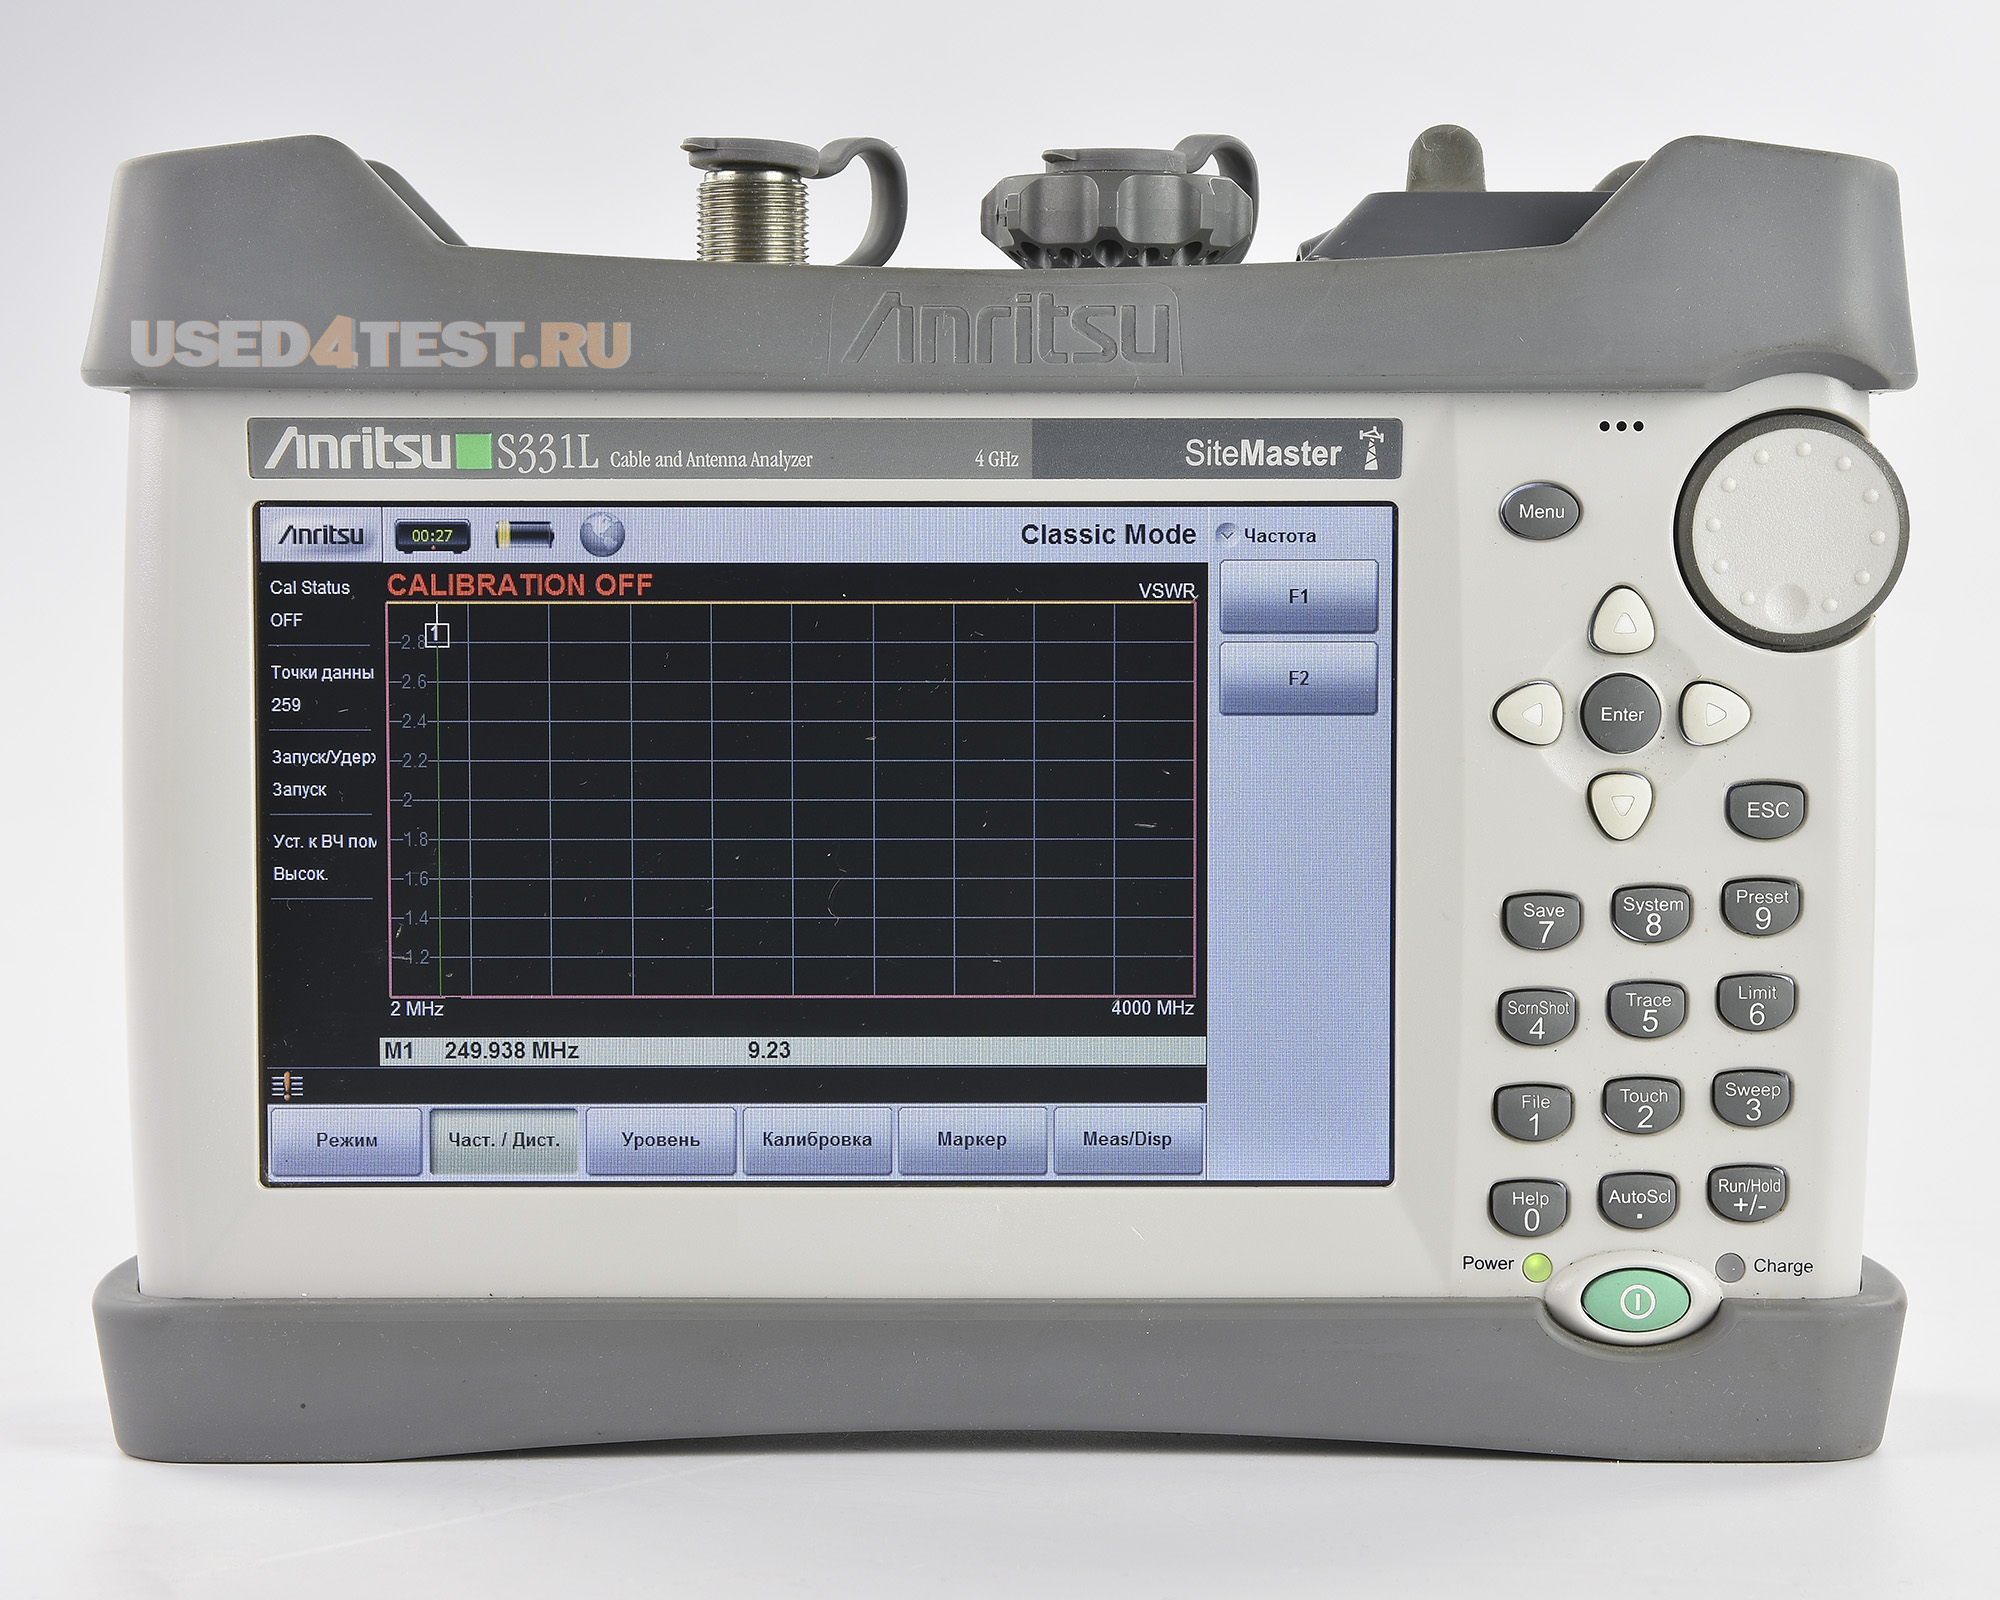 Анализатор антенн и фидерных линийAnritsu Site Master S331Lс диапазоном от 2МГц до 4ГГц

 Стоимость указана в Рублях DDP Москва по безналичному расчету включая НДС 20%
